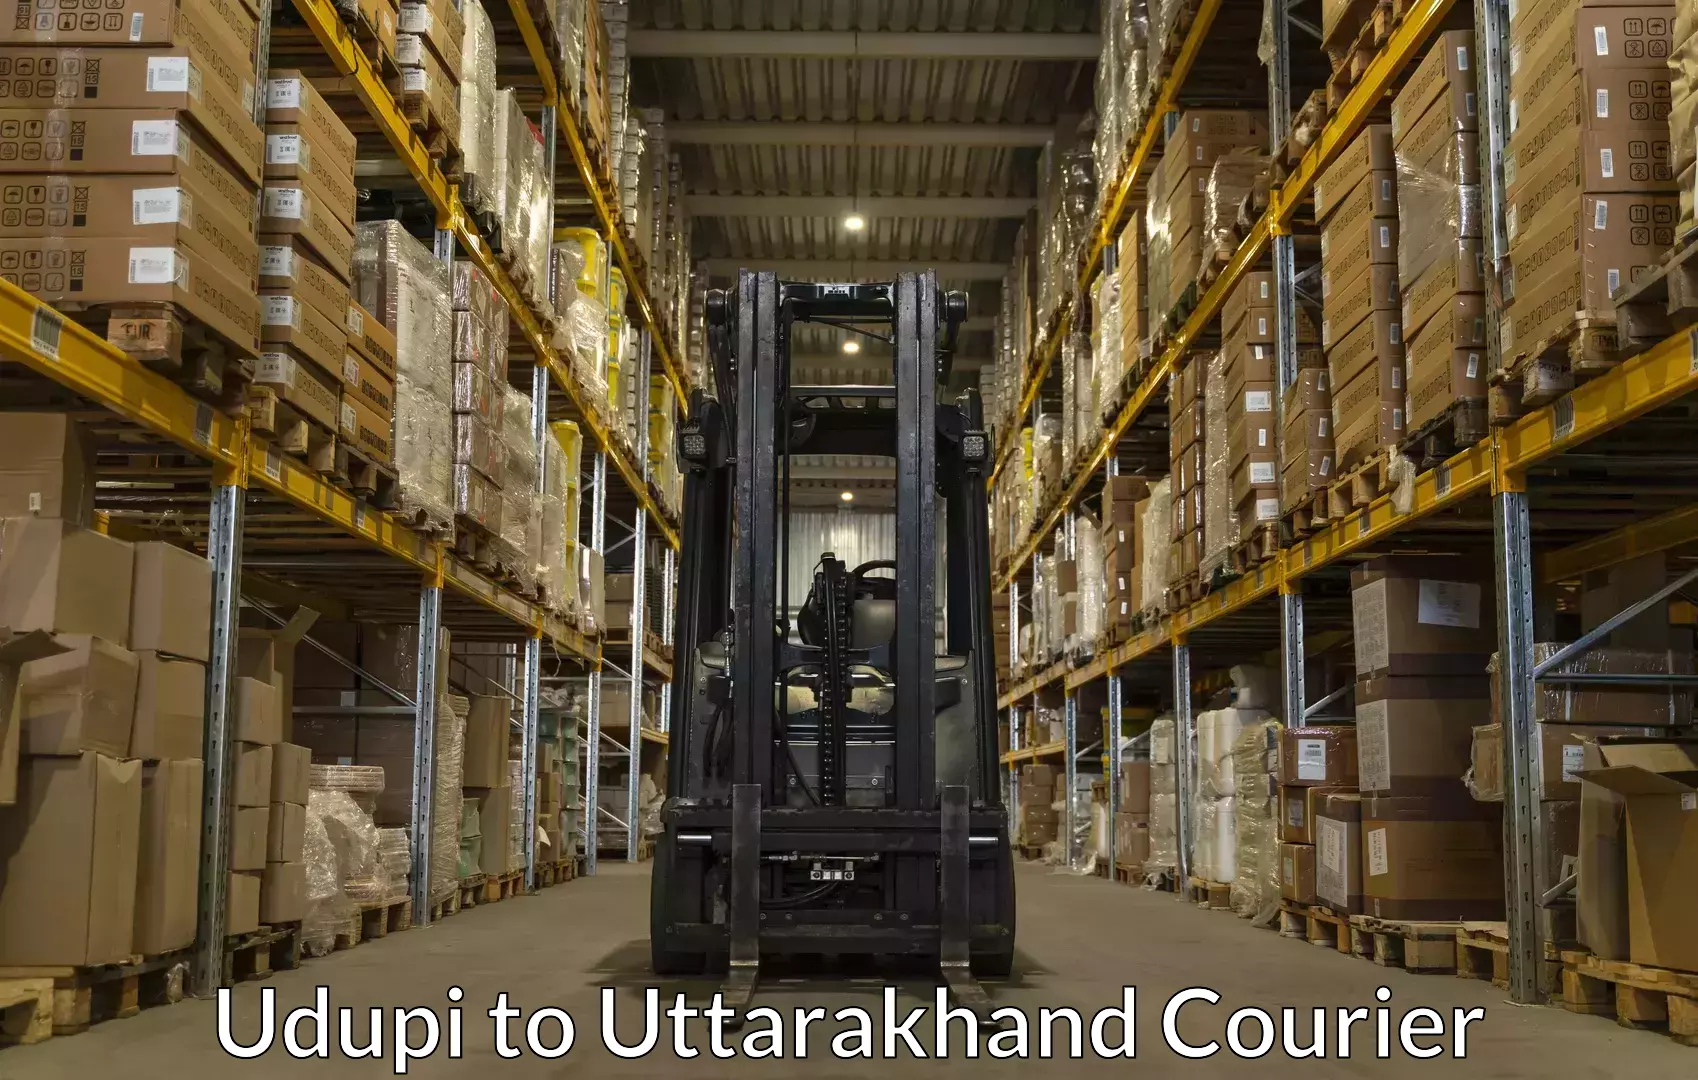 Luggage courier logistics Udupi to Rishikesh